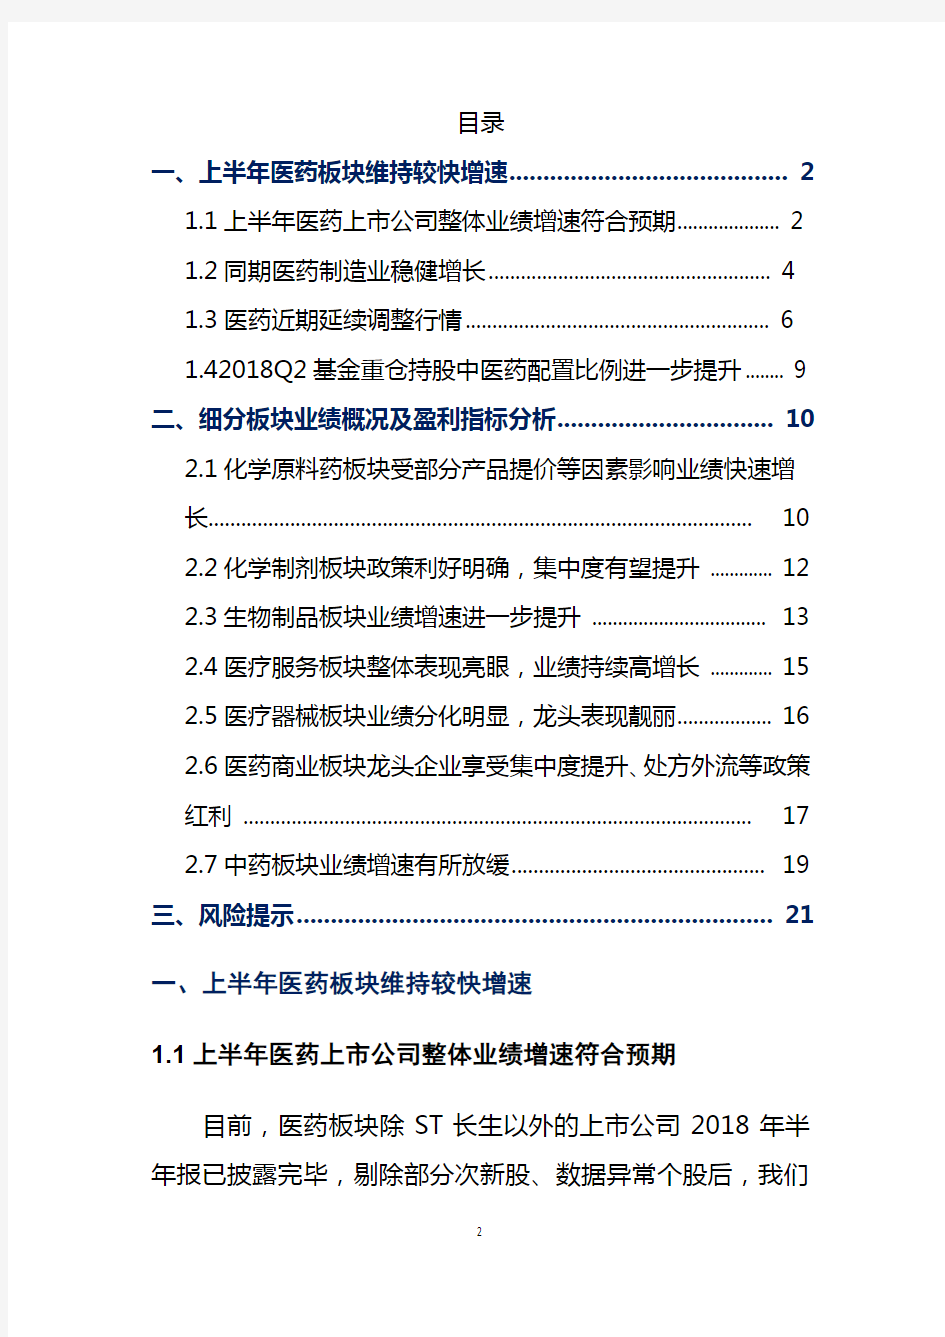 2018年中国医药行业分析报告